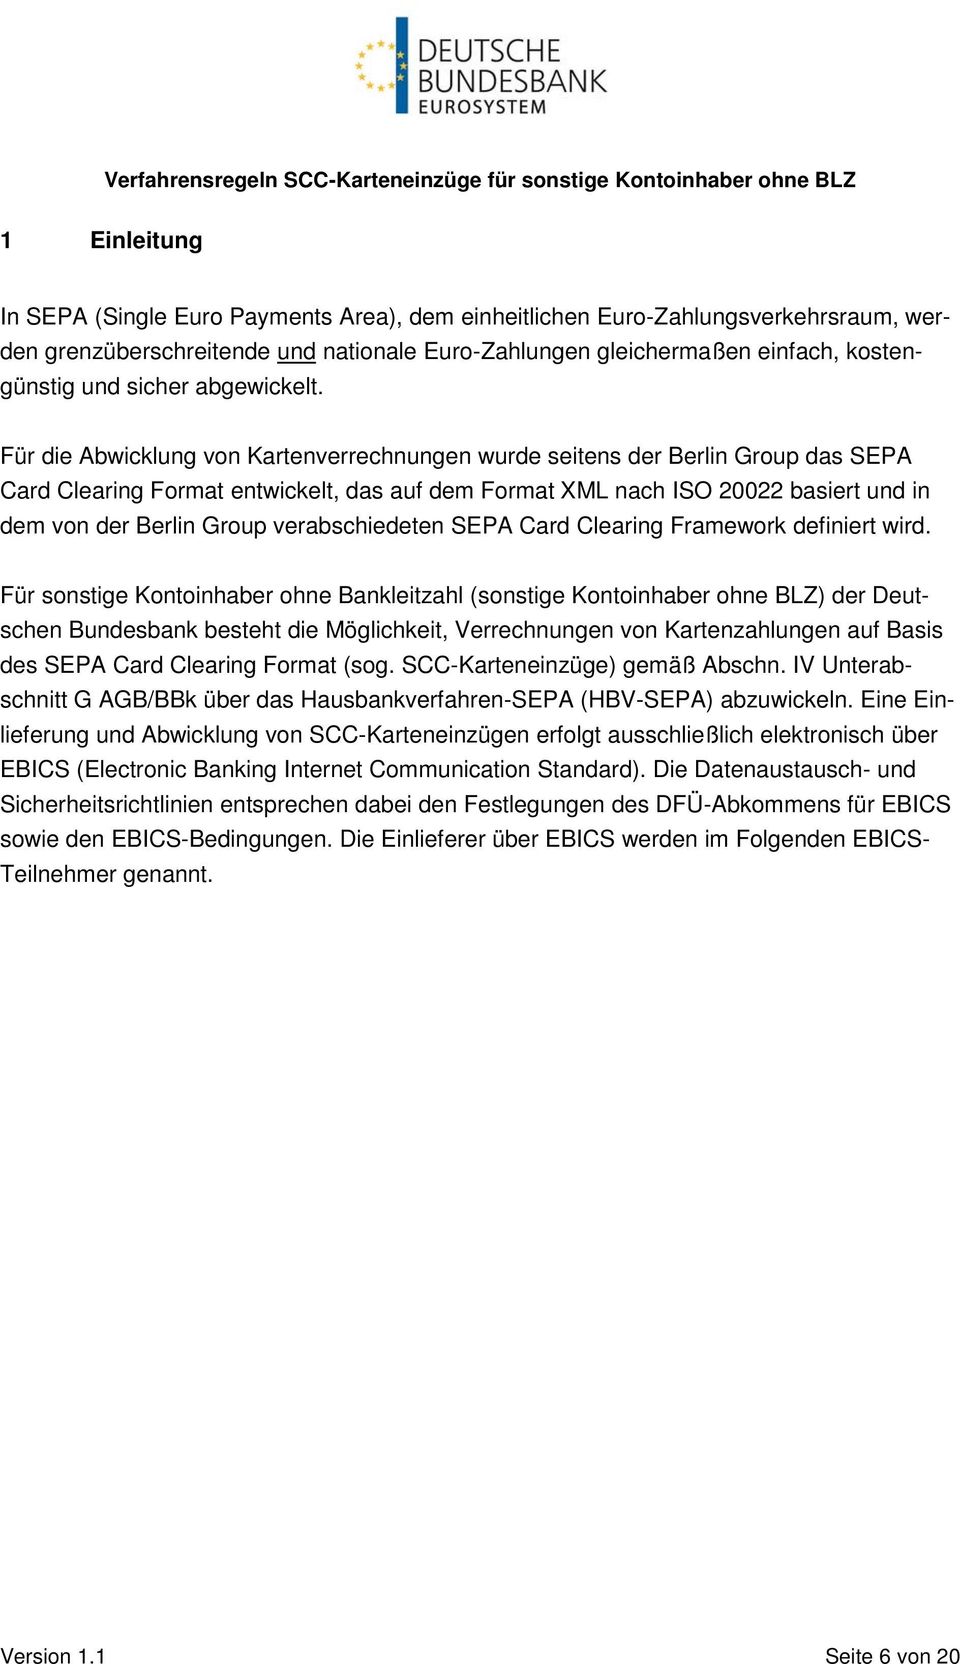 Für die Abwicklung von Kartenverrechnungen wurde seitens der Berlin Group das SEPA Card Clearing Format entwickelt, das auf dem Format XML nach ISO 20022 basiert und in dem von der Berlin Group